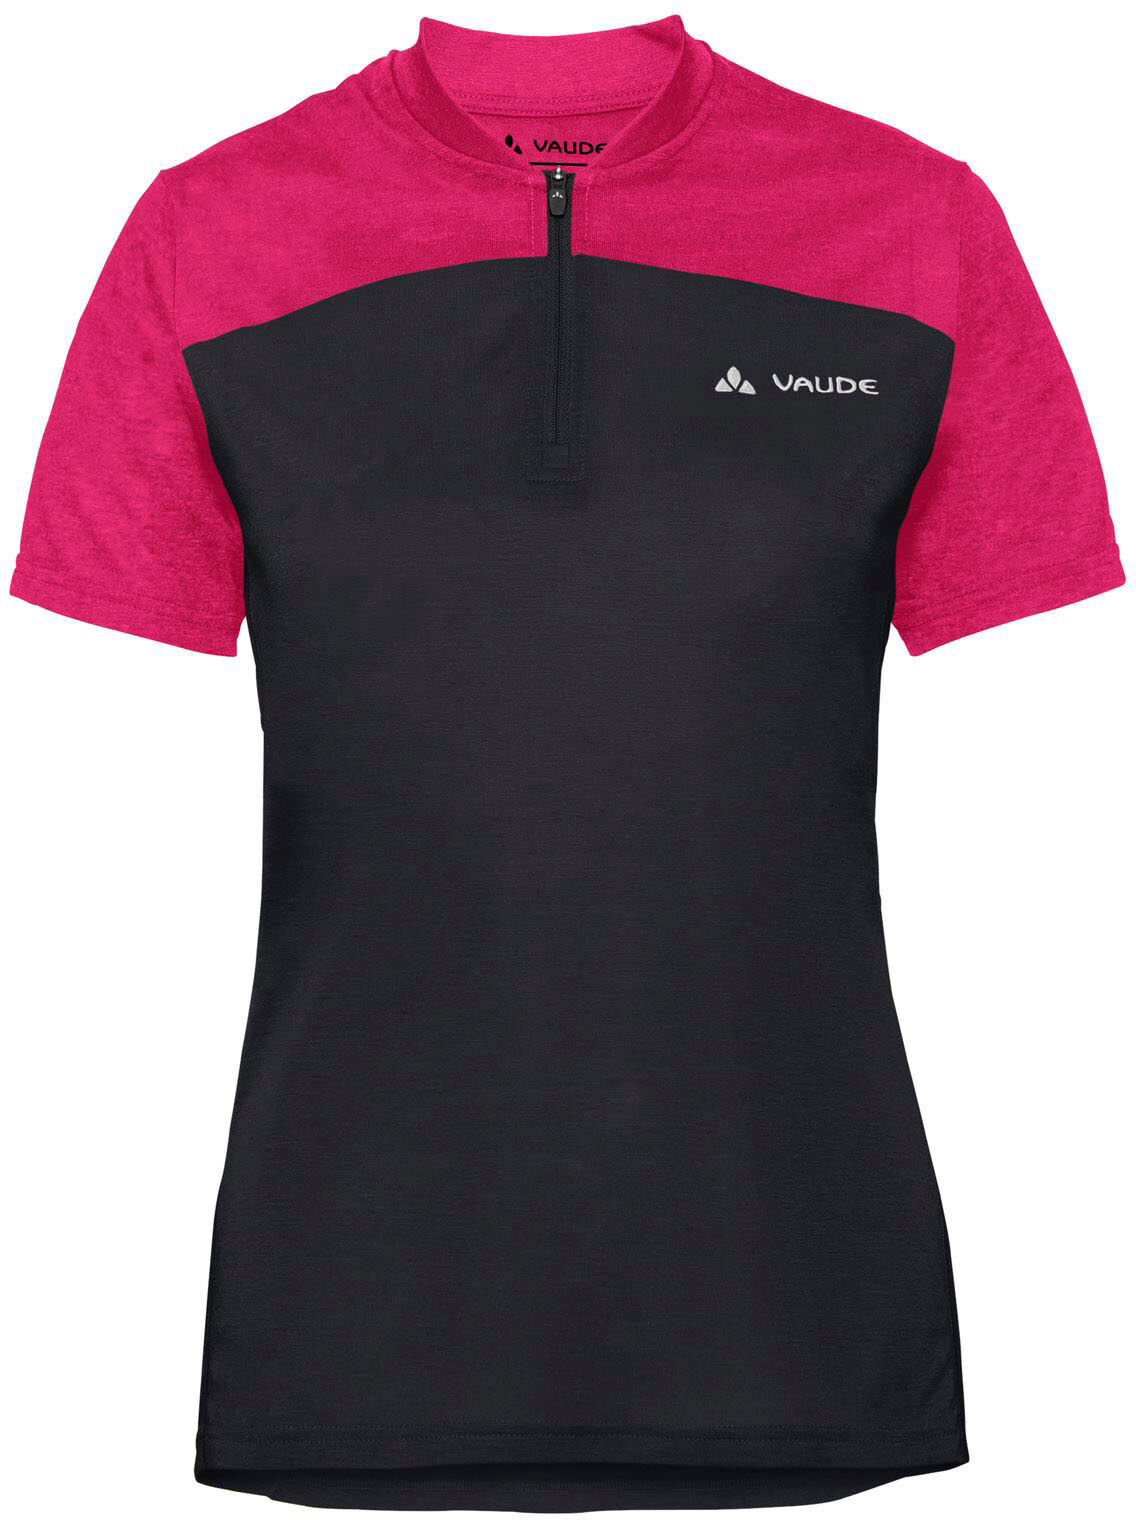 VAUDE Funktionsshirt »Women's Tremalzo T-Shirt IV« schwarz Größe 36 38 40 42 44 46